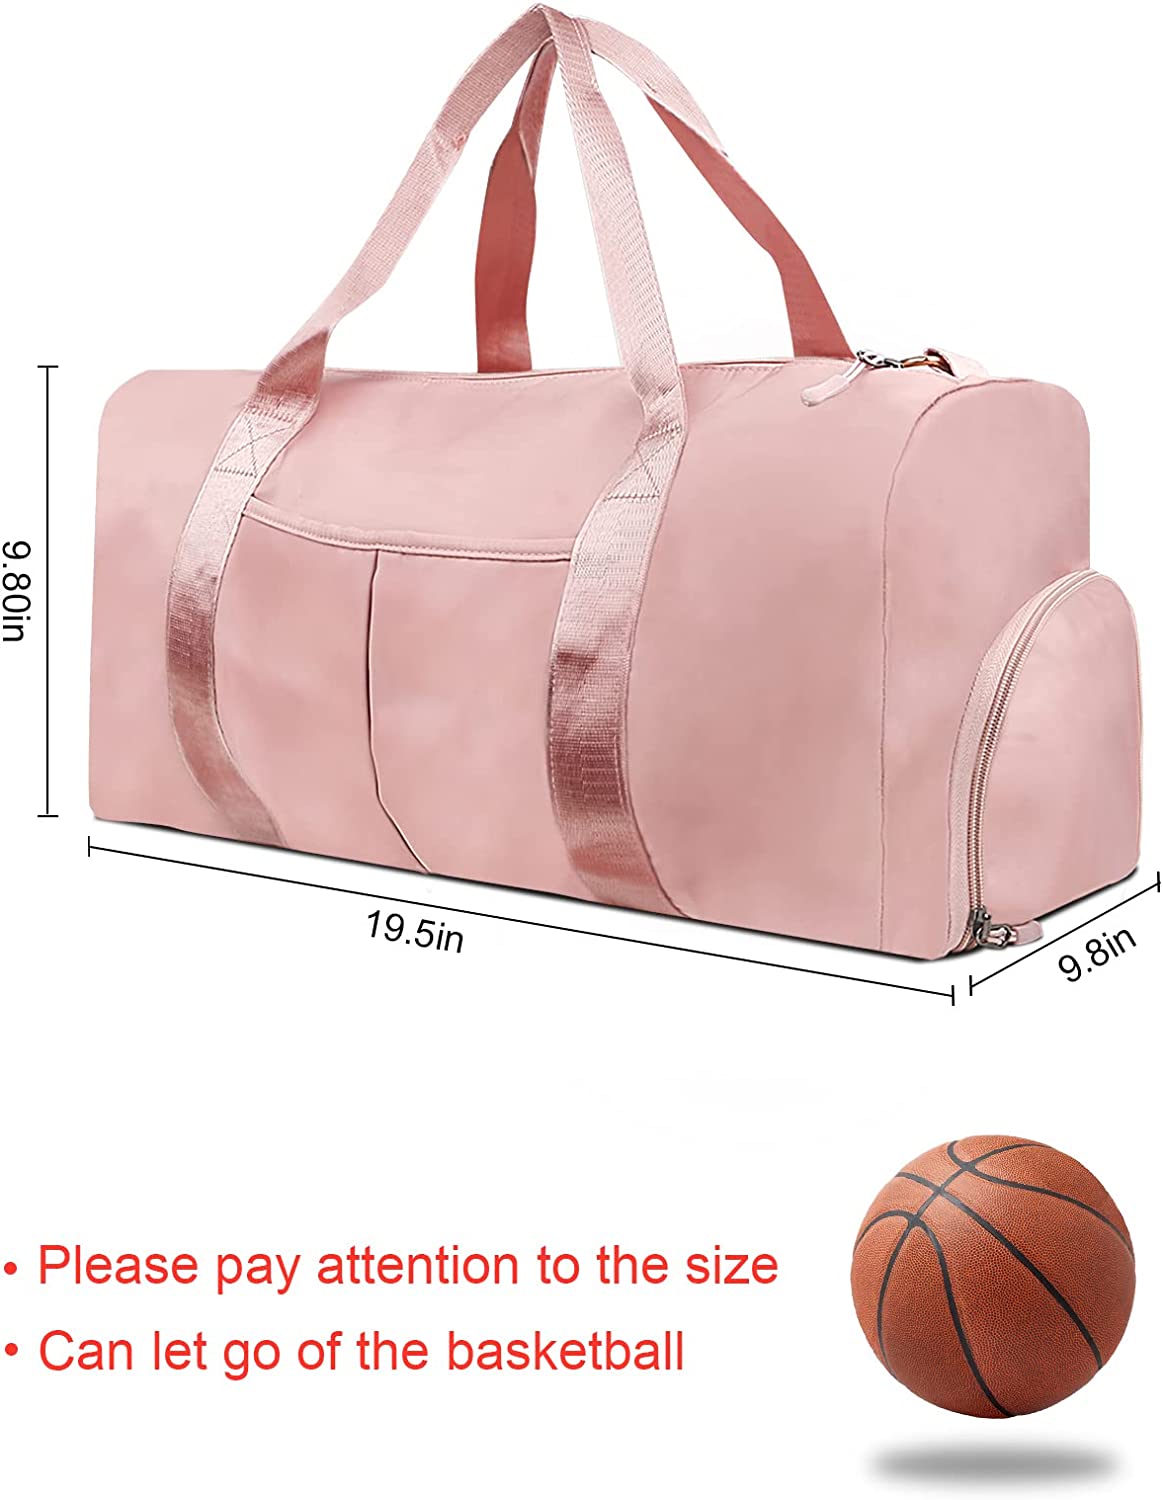 Bolsa de lona de viaje para deportes, gimnasio, impermeable, para el fin de semana, para pasar la noche, bolsa de lona de trabajo rosa con bolsillo húmedo y compartimento para zapatos